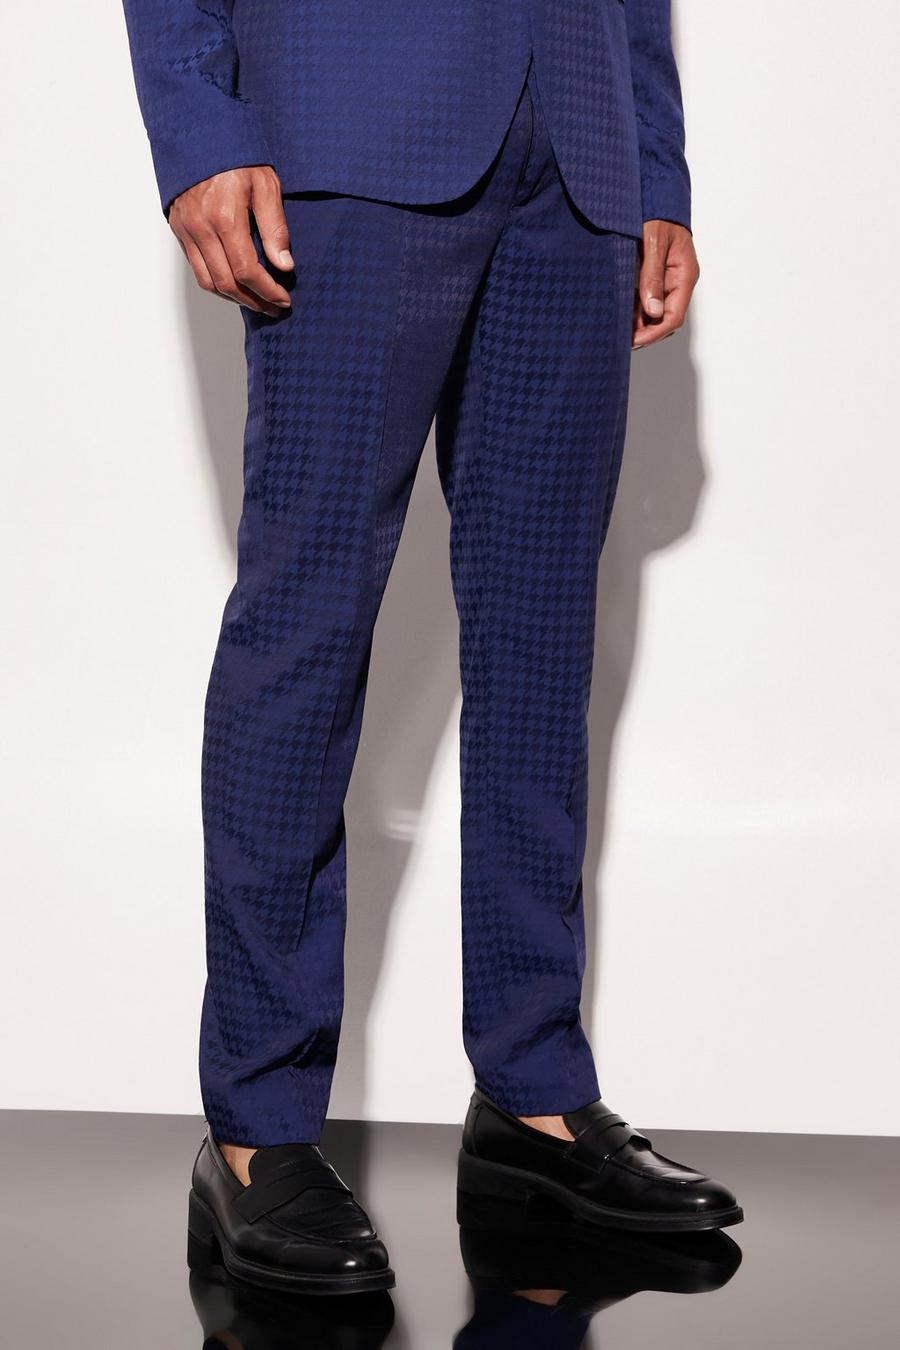 נייבי blu oltremare מכנסי חליפה קרופ סקיני עם הדפס משבצות משוננות, לגברים גבוהים